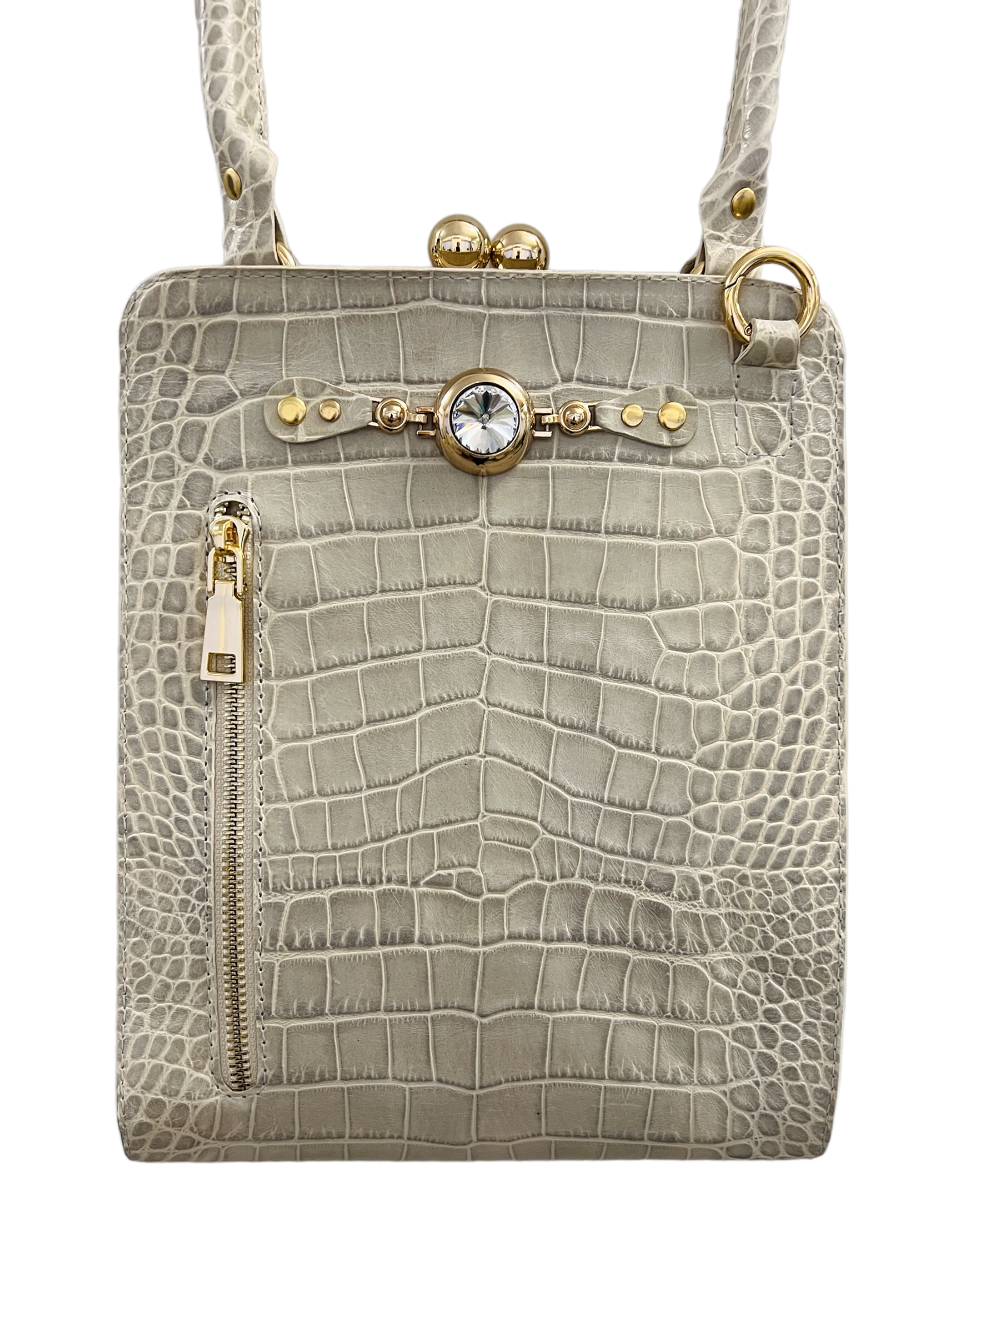 картинка кожаные  "Камалия-04" - Женская кожаная сумка с фермуаром. Светлый крокодил, тиснение, золото от Ирины Берзиной